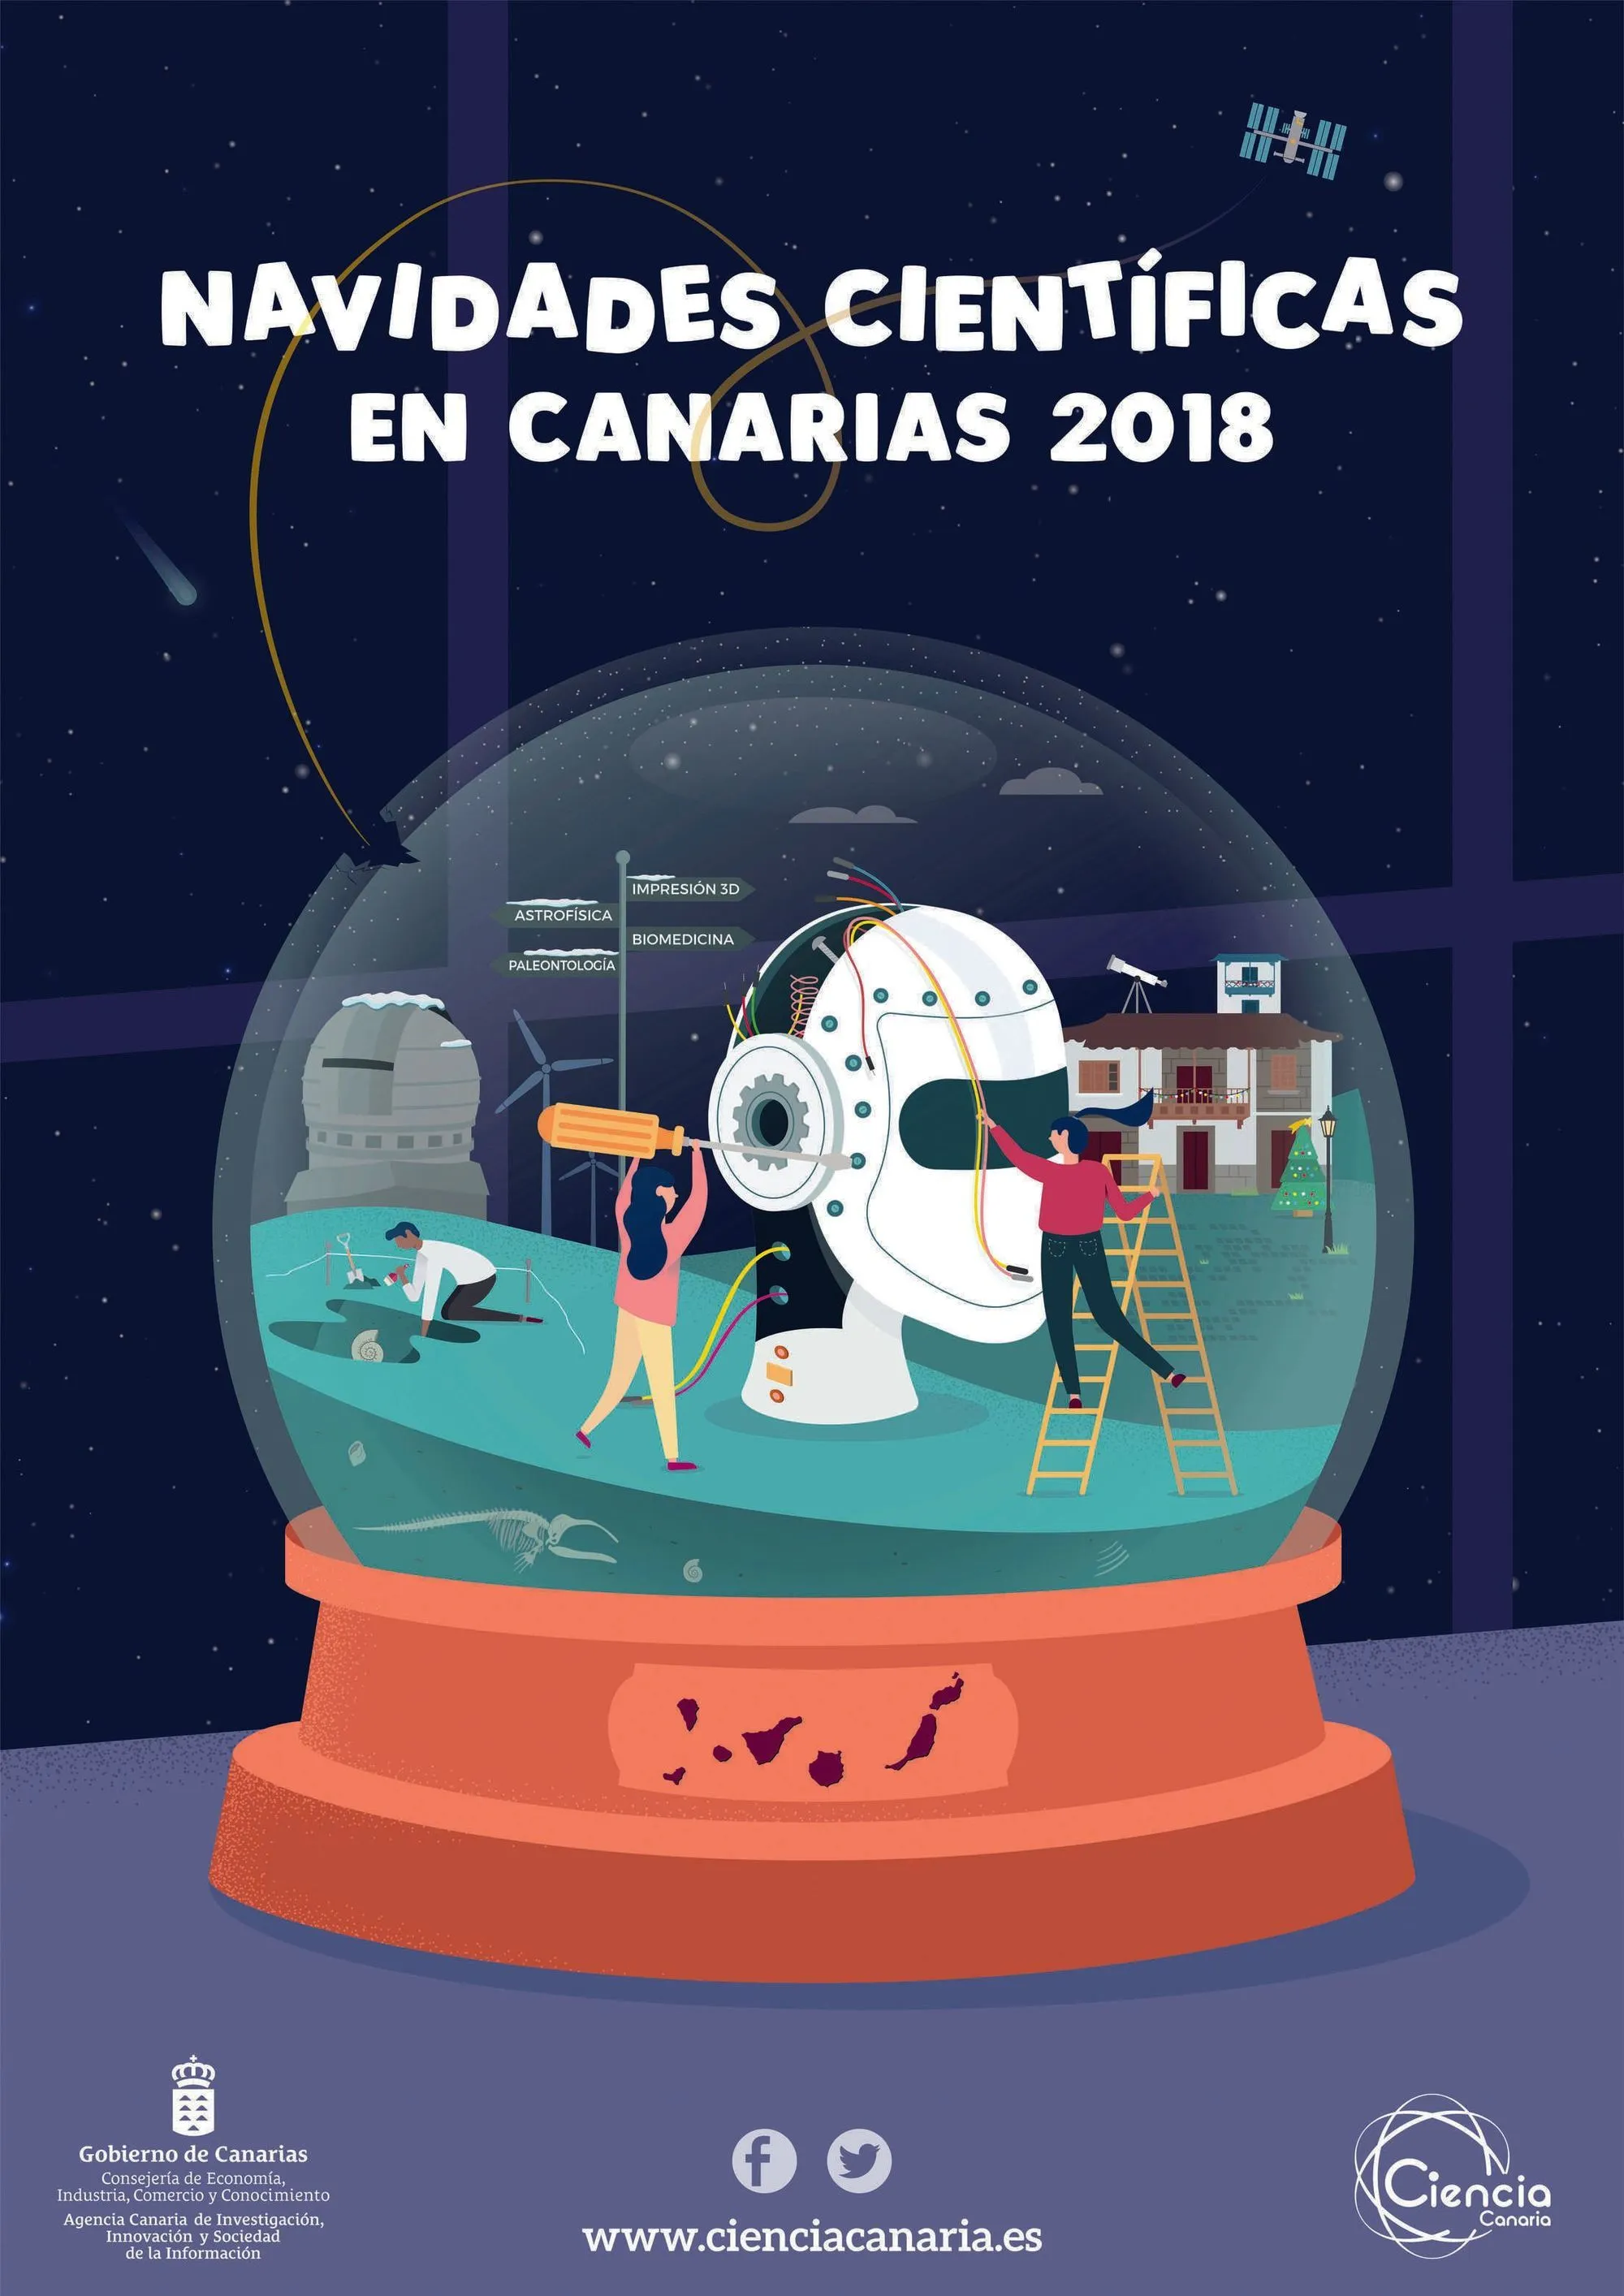 Navidades cientificas en Canarias 2018